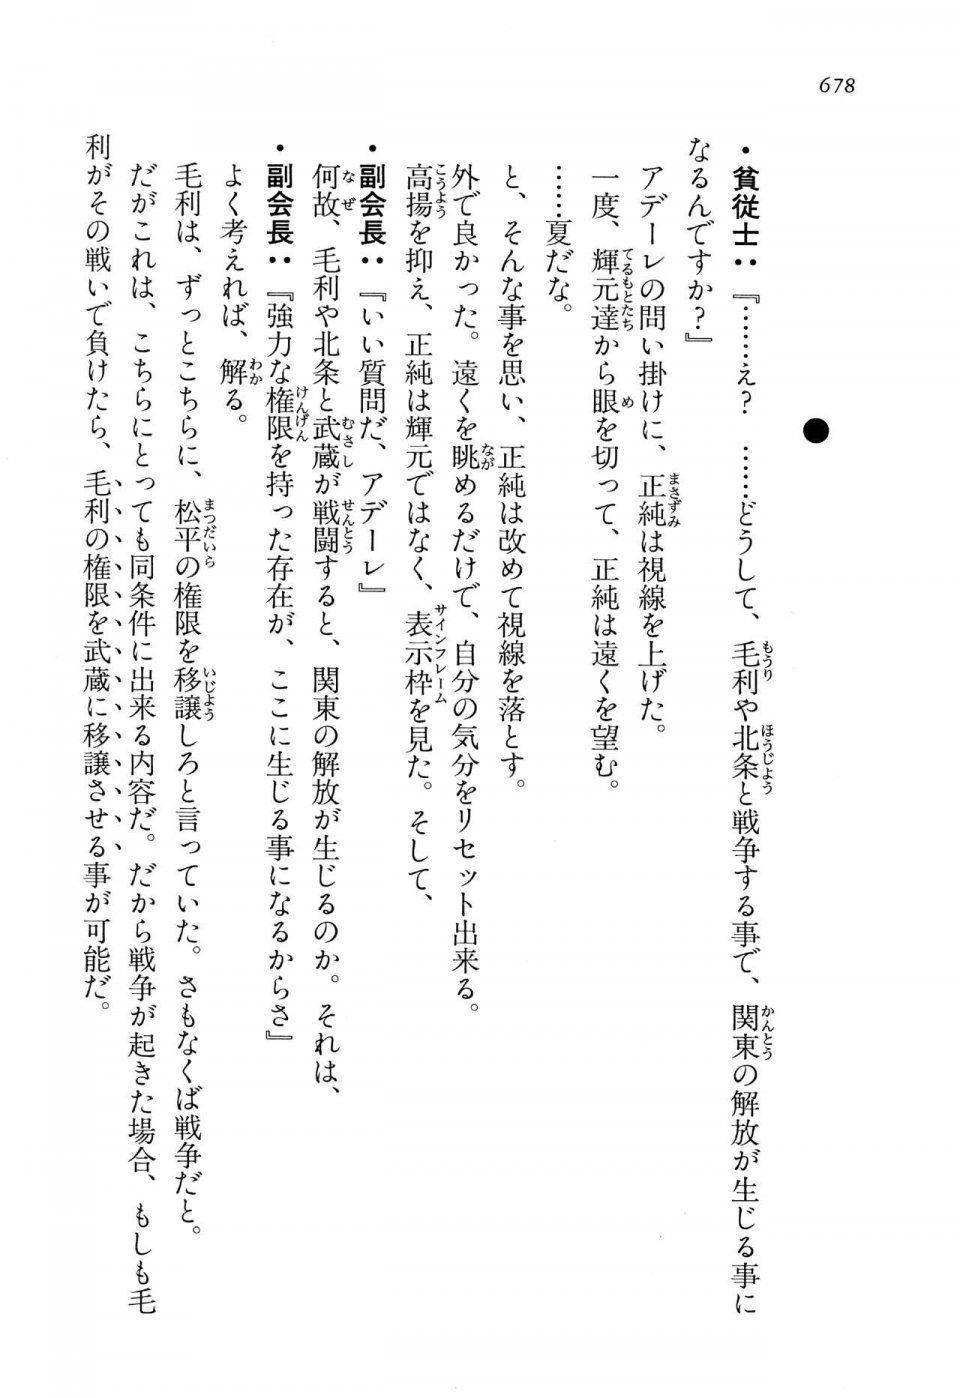 Kyoukai Senjou no Horizon LN Vol 13(6A) - Photo #678